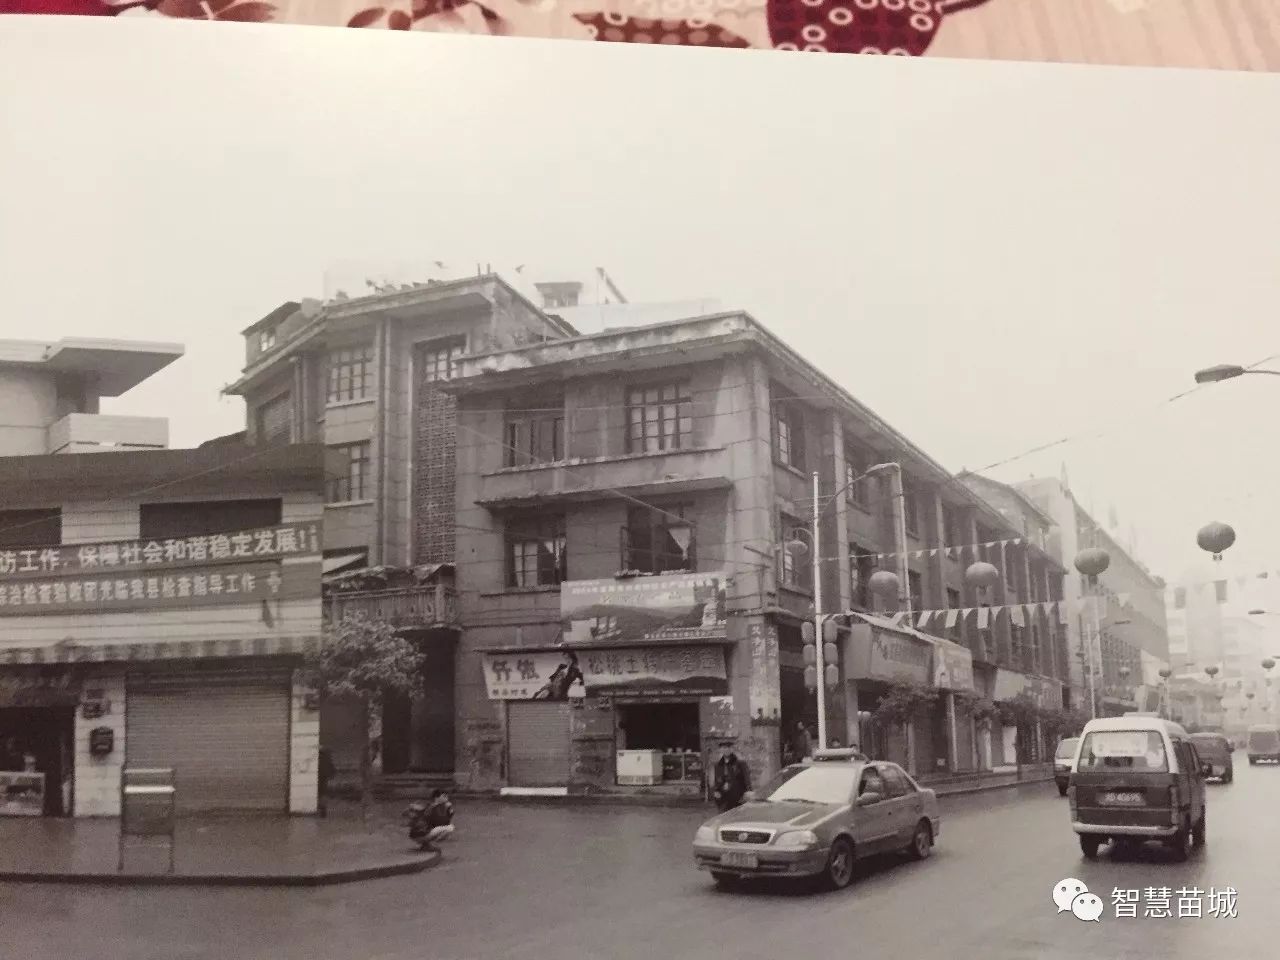 十五张松桃老城照片,有几张比50,60后的年纪还大,不信来瞧瞧!